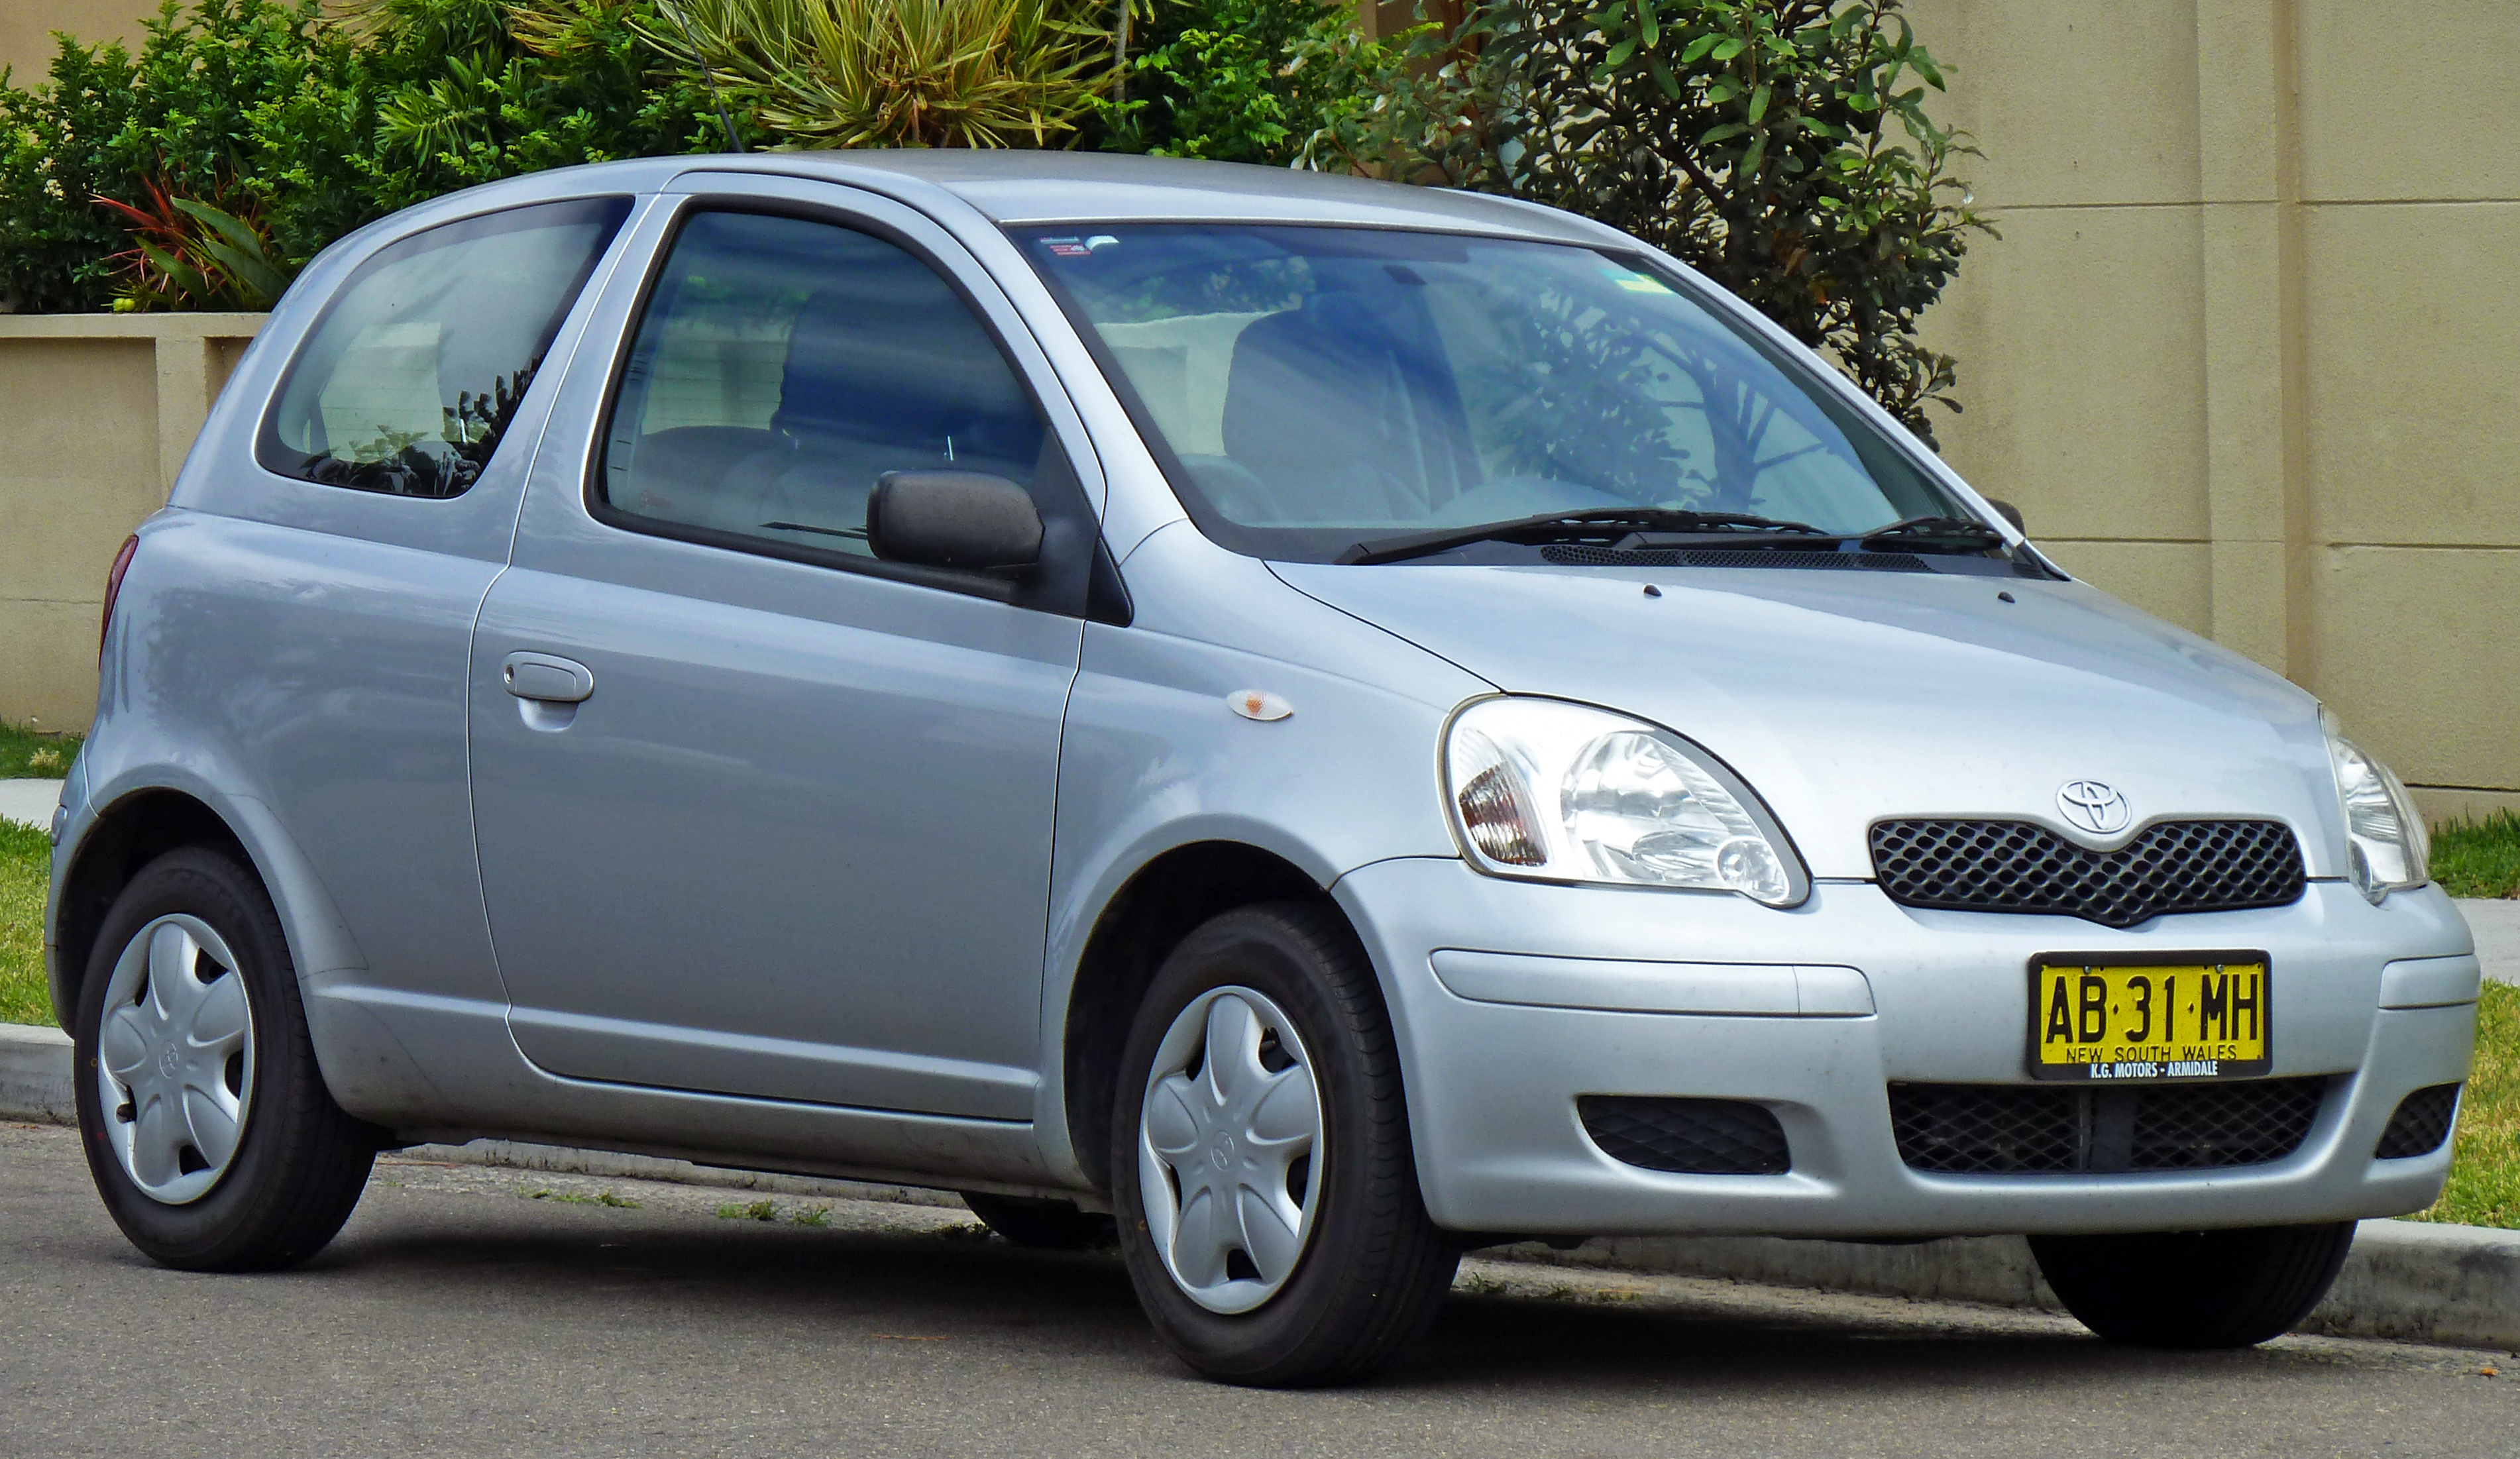 2003-2005_Toyota_Echo_(NCP10R)_3-door_hatchback_(2010-12-28).jpg